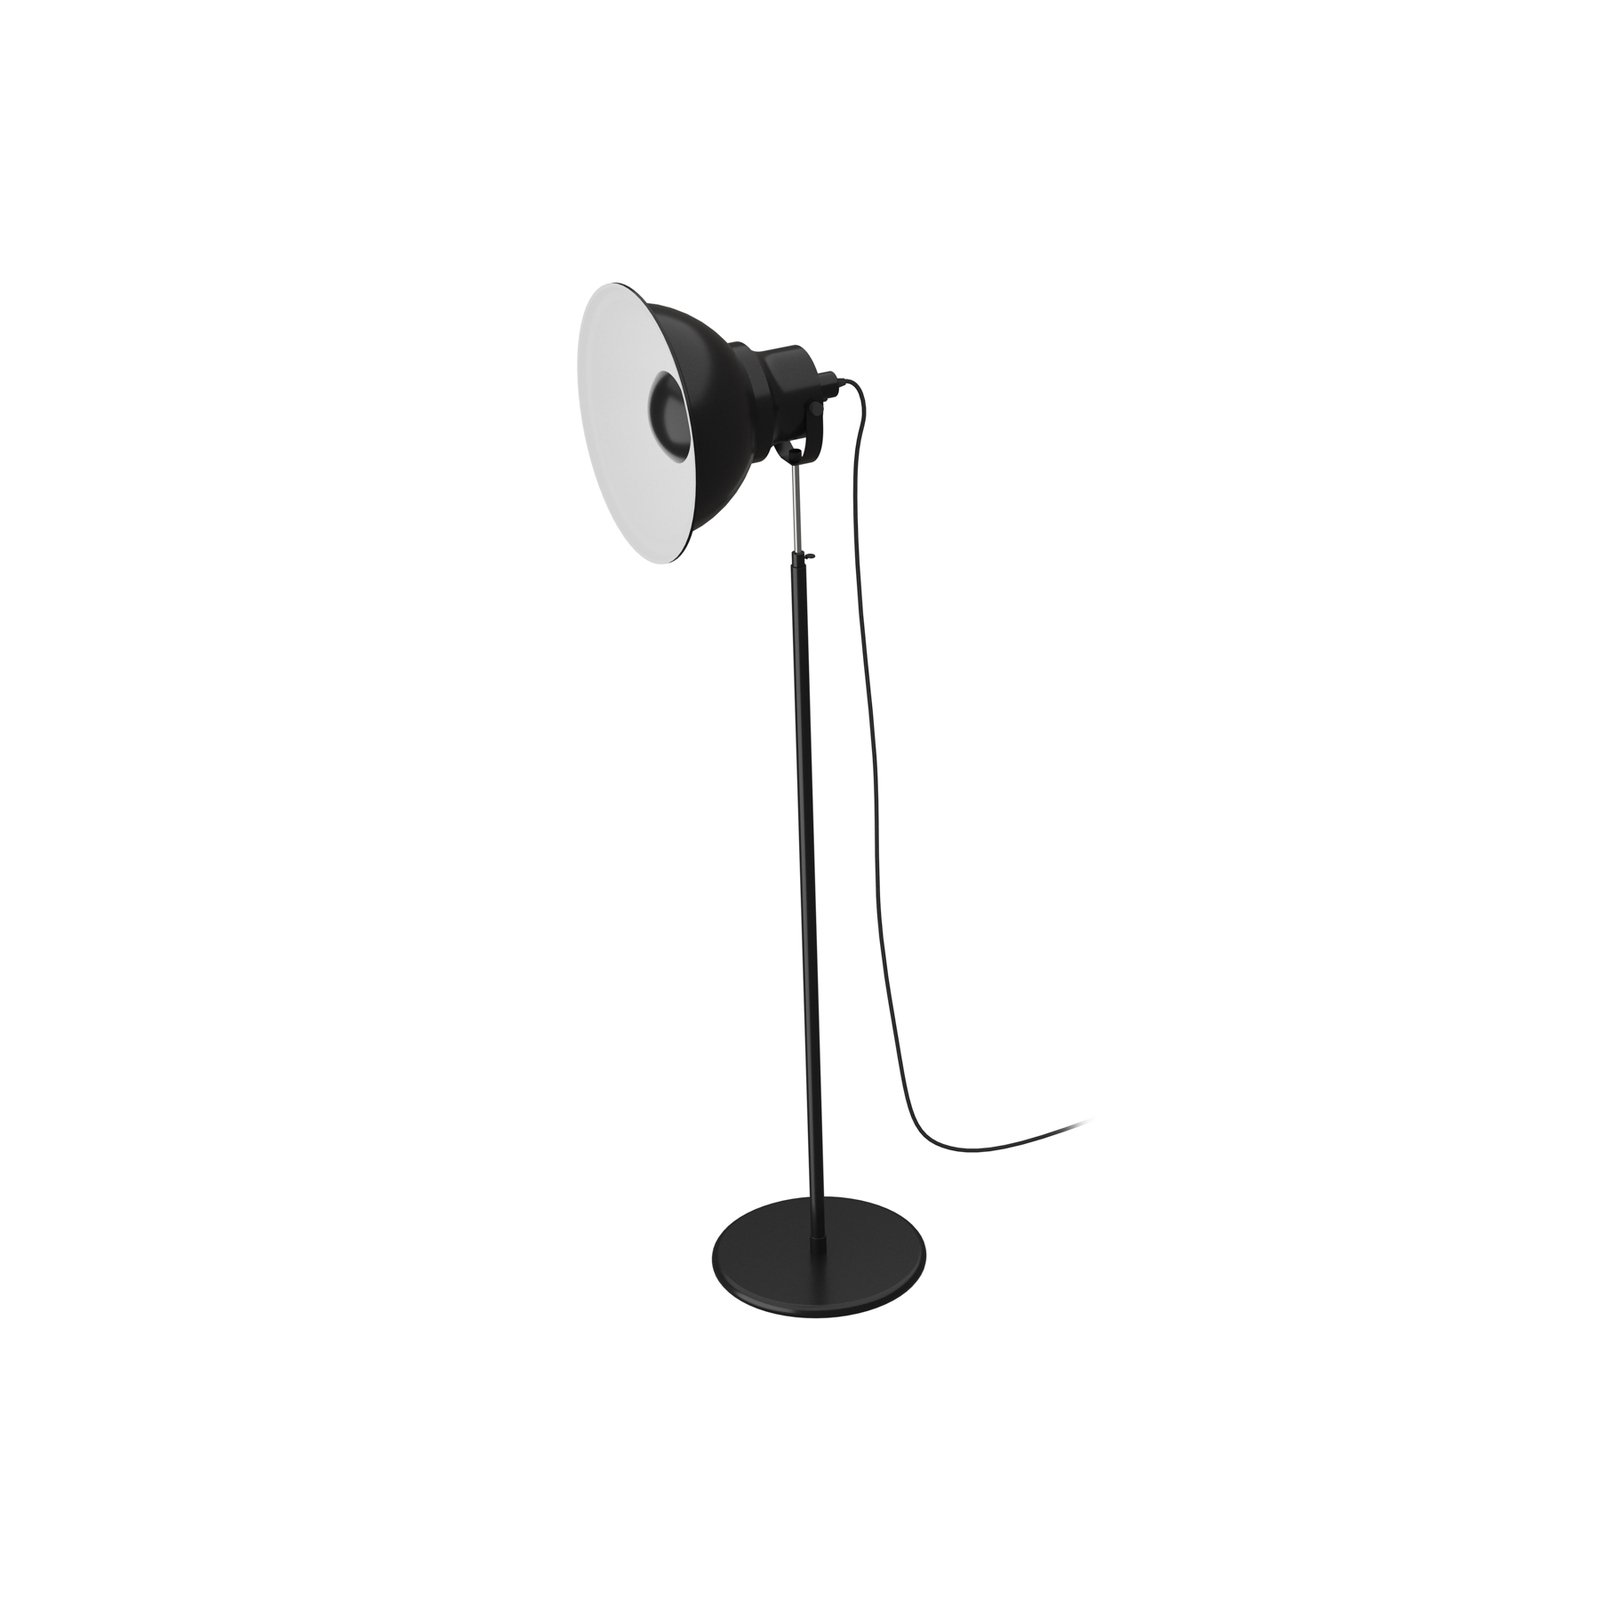 Aluminor Reflex 2 lampe sur pied, réglable, noire